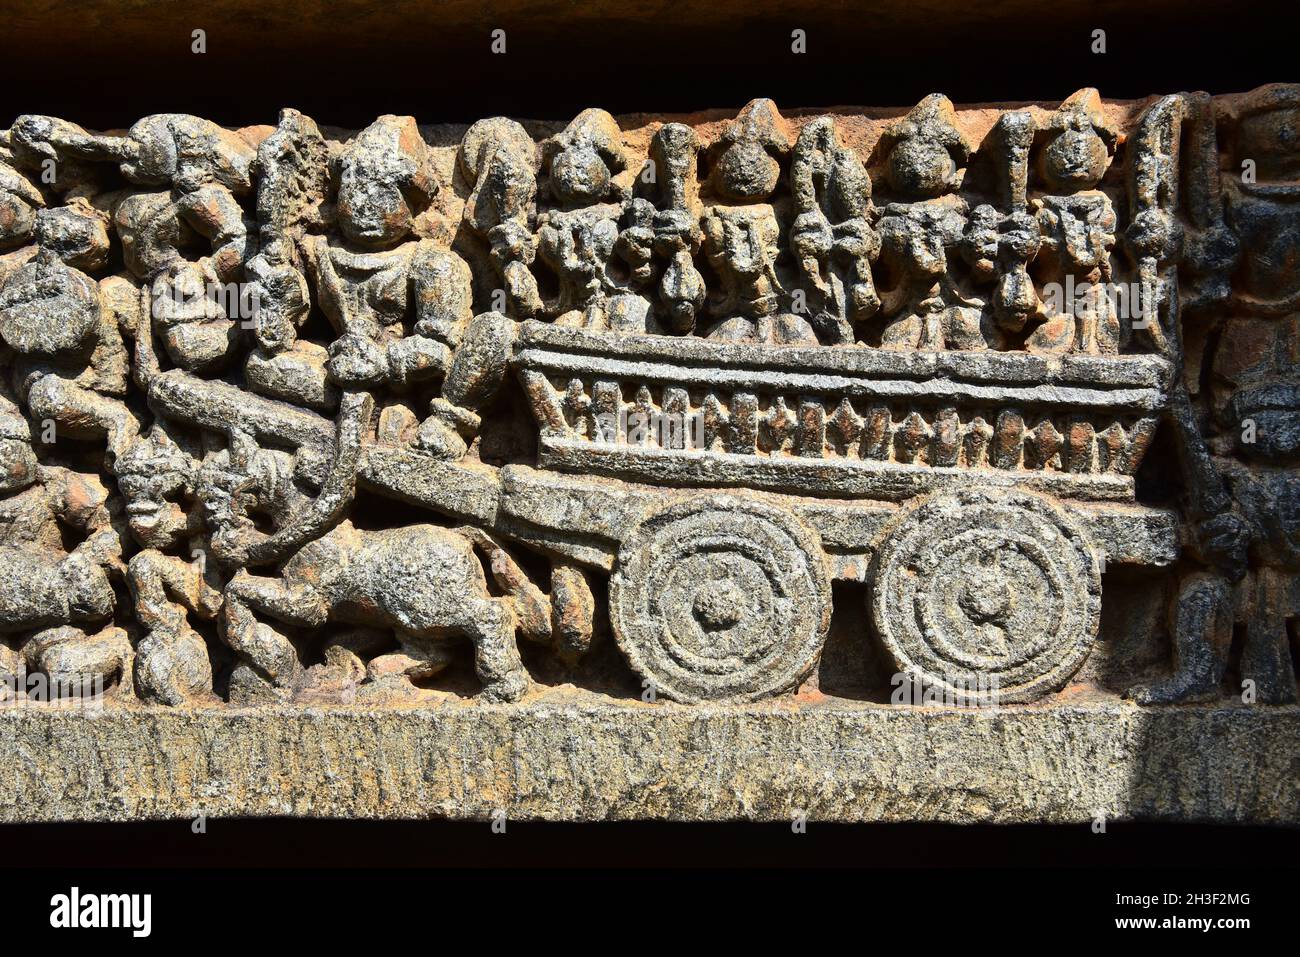 sculpture en pierre de charrette à somnathpur,mysore,india.ce temple hindou est célèbre pour ses sculptures en pierre complexes. Banque D'Images